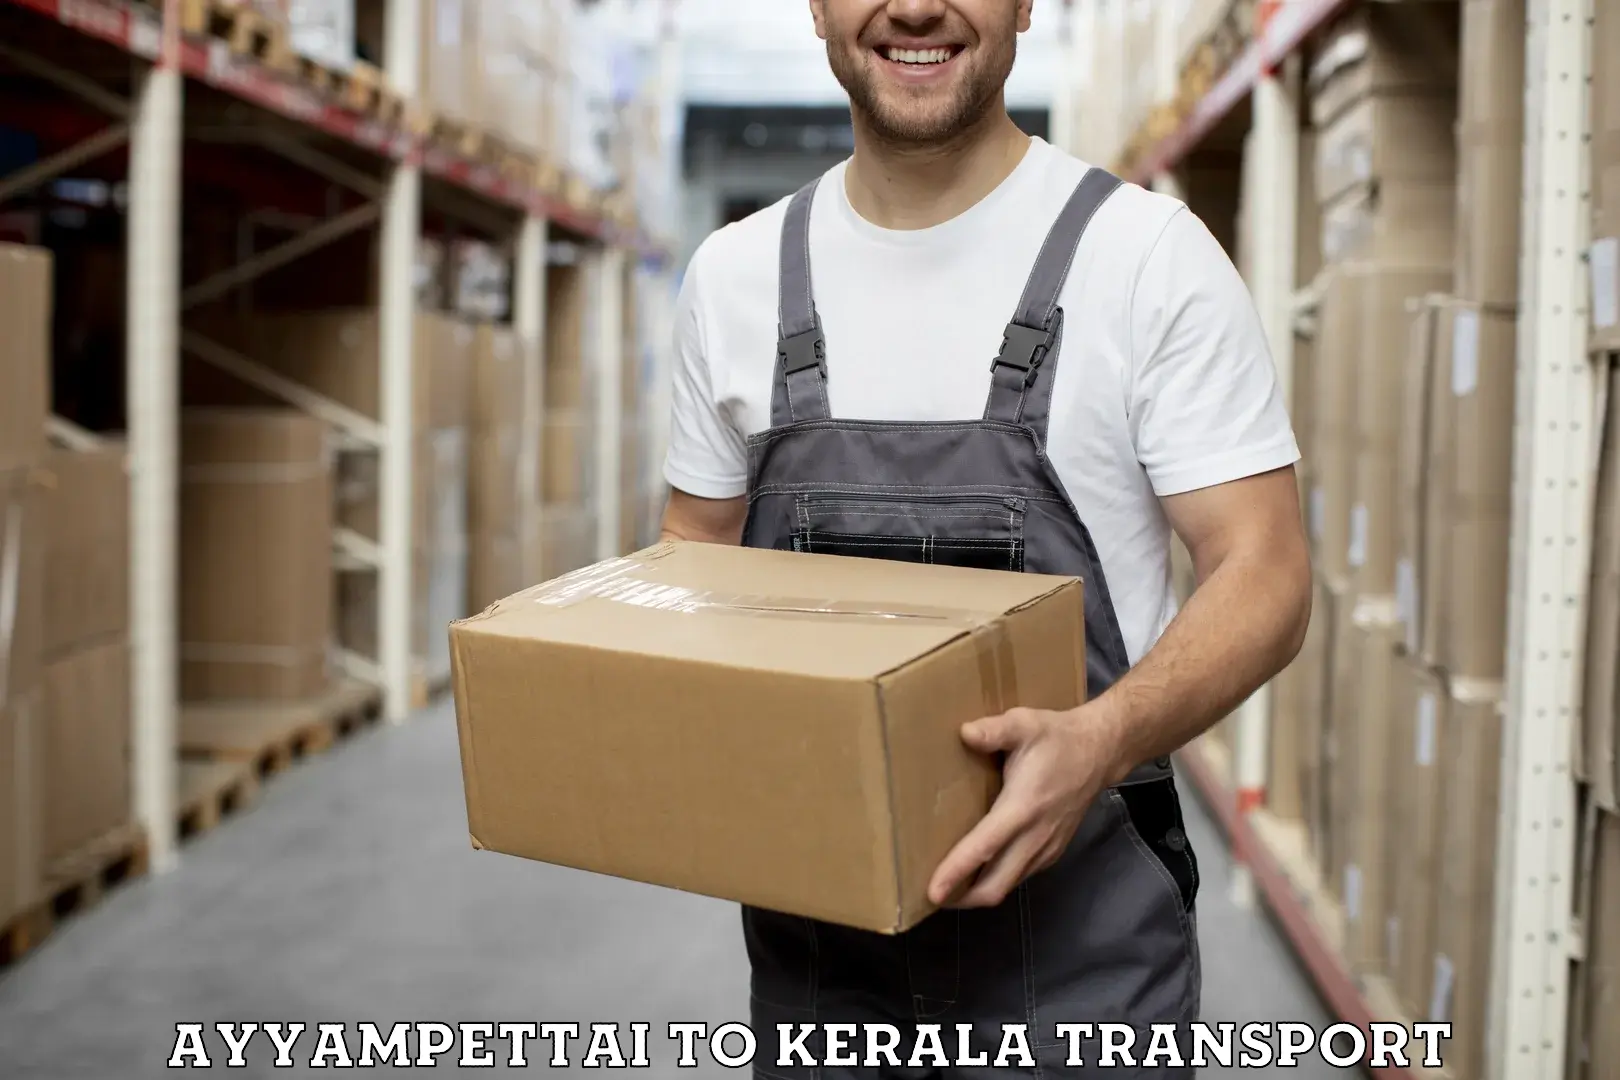 Commercial transport service Ayyampettai to Cheemeni